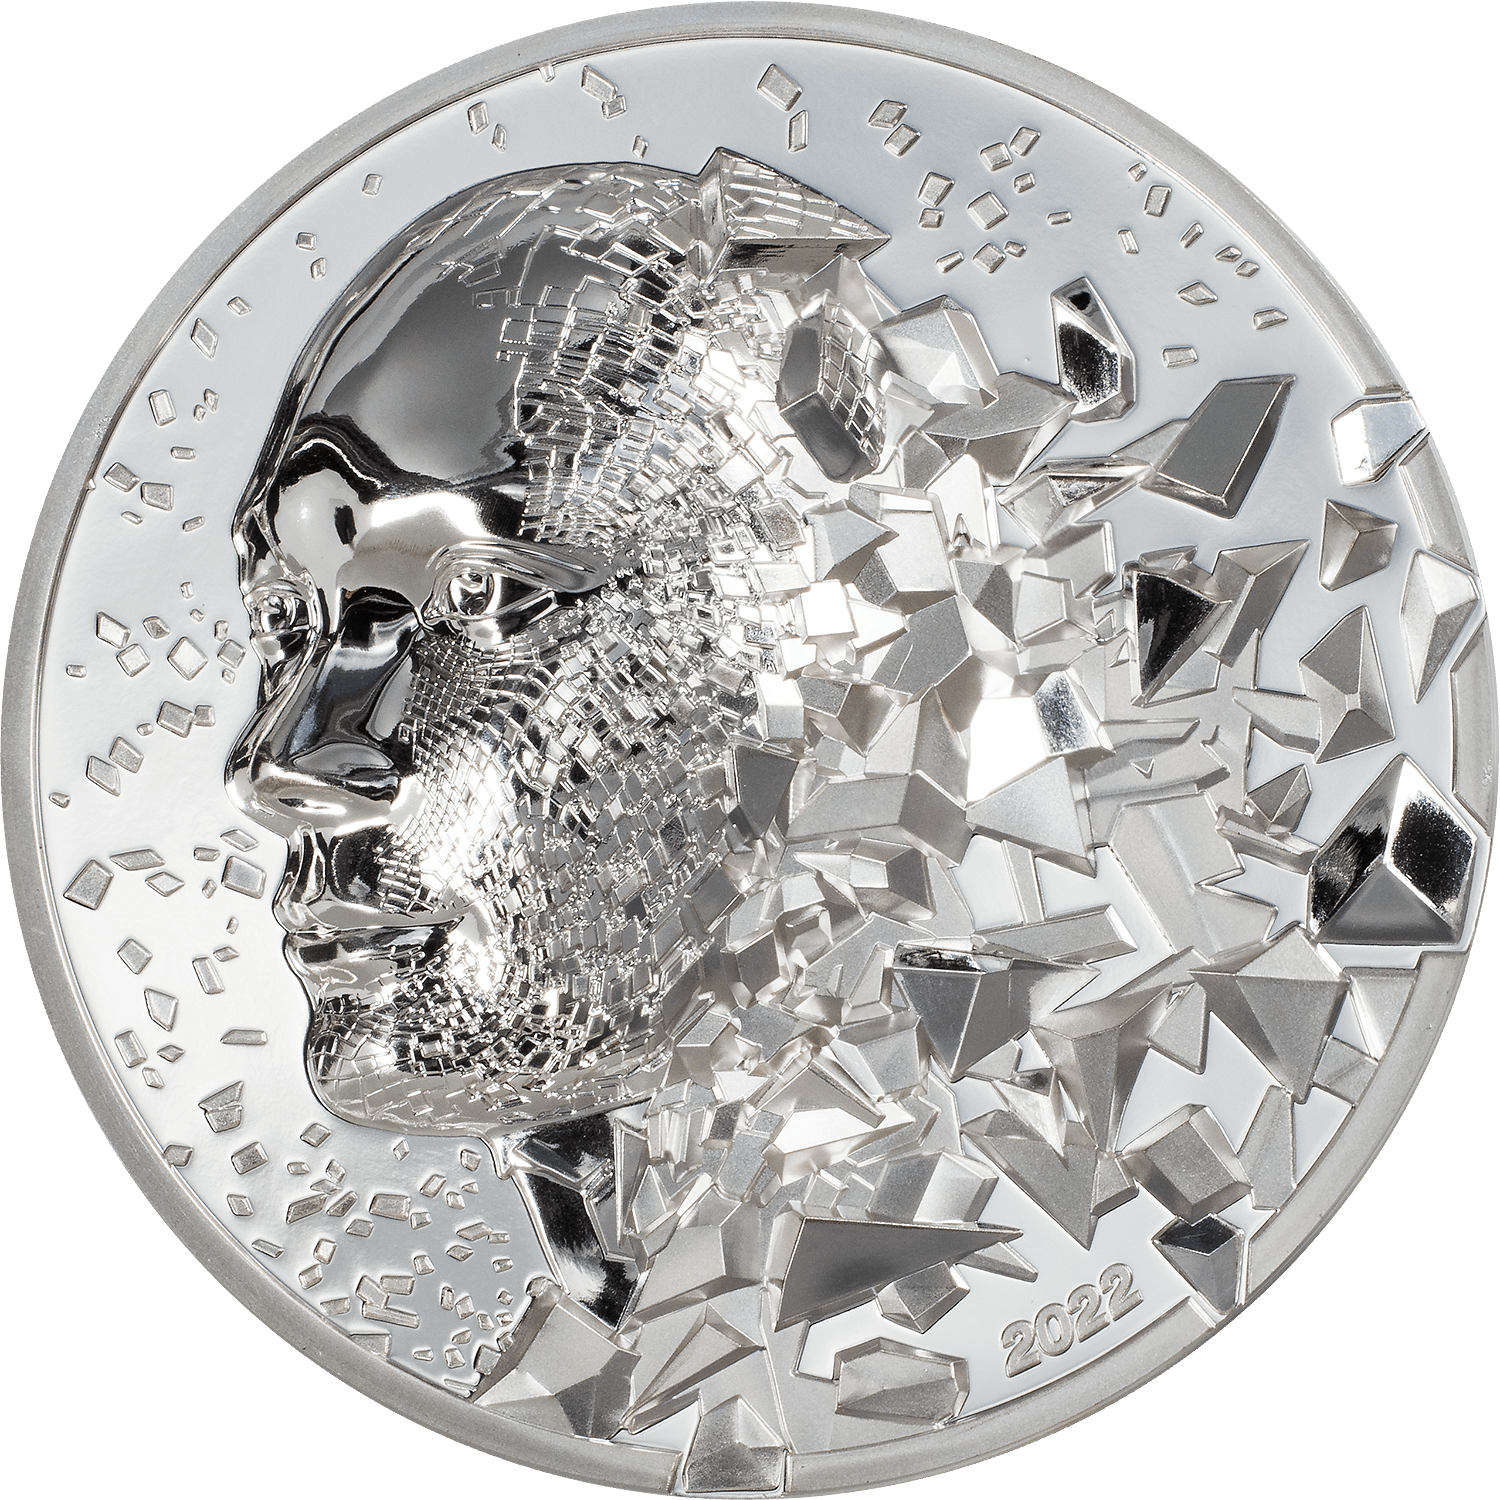 SILVER BURST 3 Oz Silver Coin $20 Cook Islands 2022 - PARTHAVA COIN